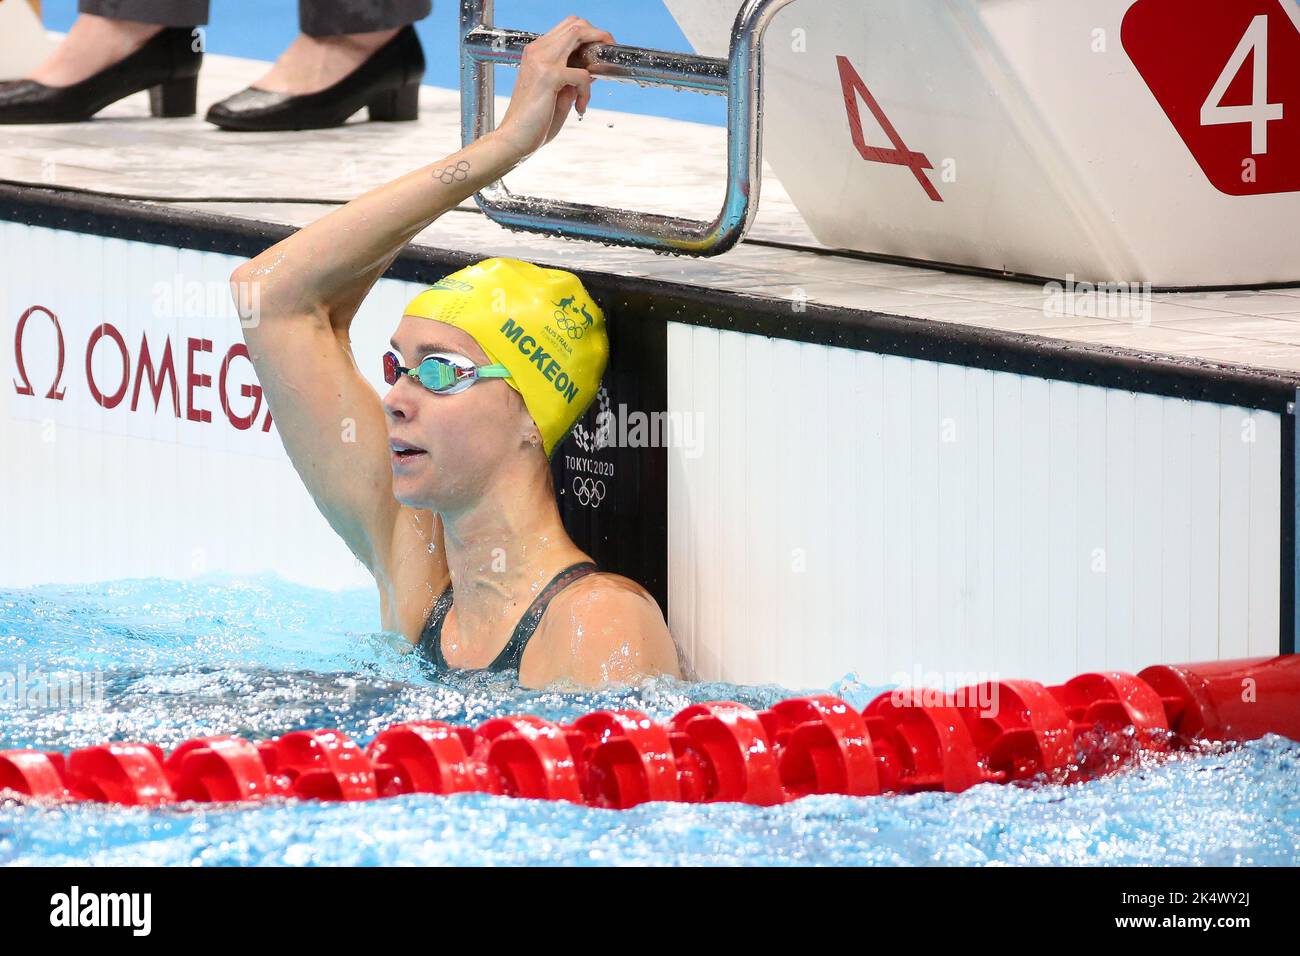 1st AGOSTO 2021 - TOKYO, GIAPPONE: Emma McKeon of Australia rompe il record olimpico nel 23,81s e vince la medaglia d'oro nella finale di Freestyle 50m delle Donne in piscina ai Giochi Olimpici di Tokyo 2020 (Foto: Mickael Chavet/RX) Foto Stock